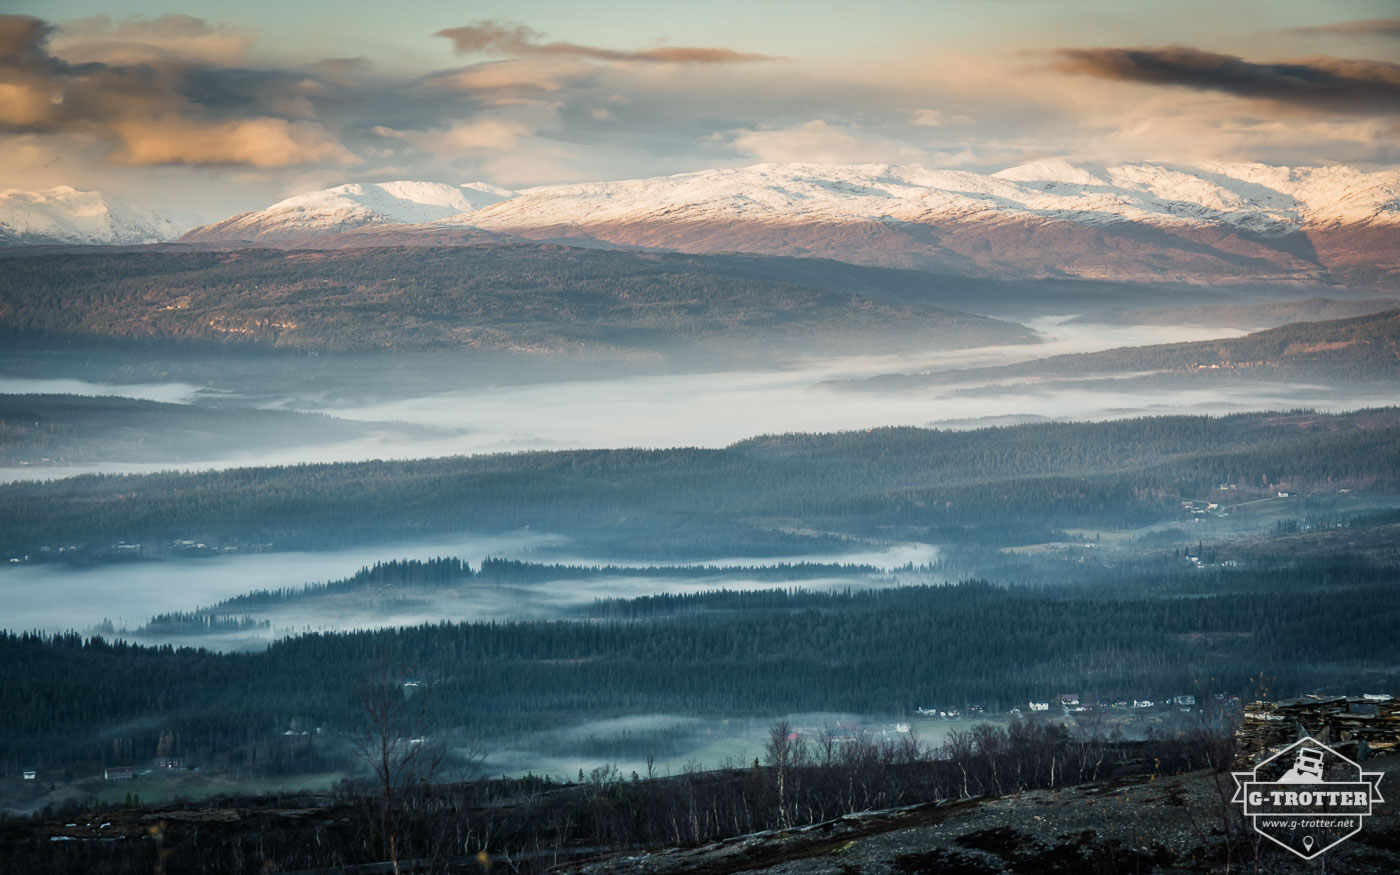 Bild 28 der Bildergalerie “4700 km durch Norwegen”